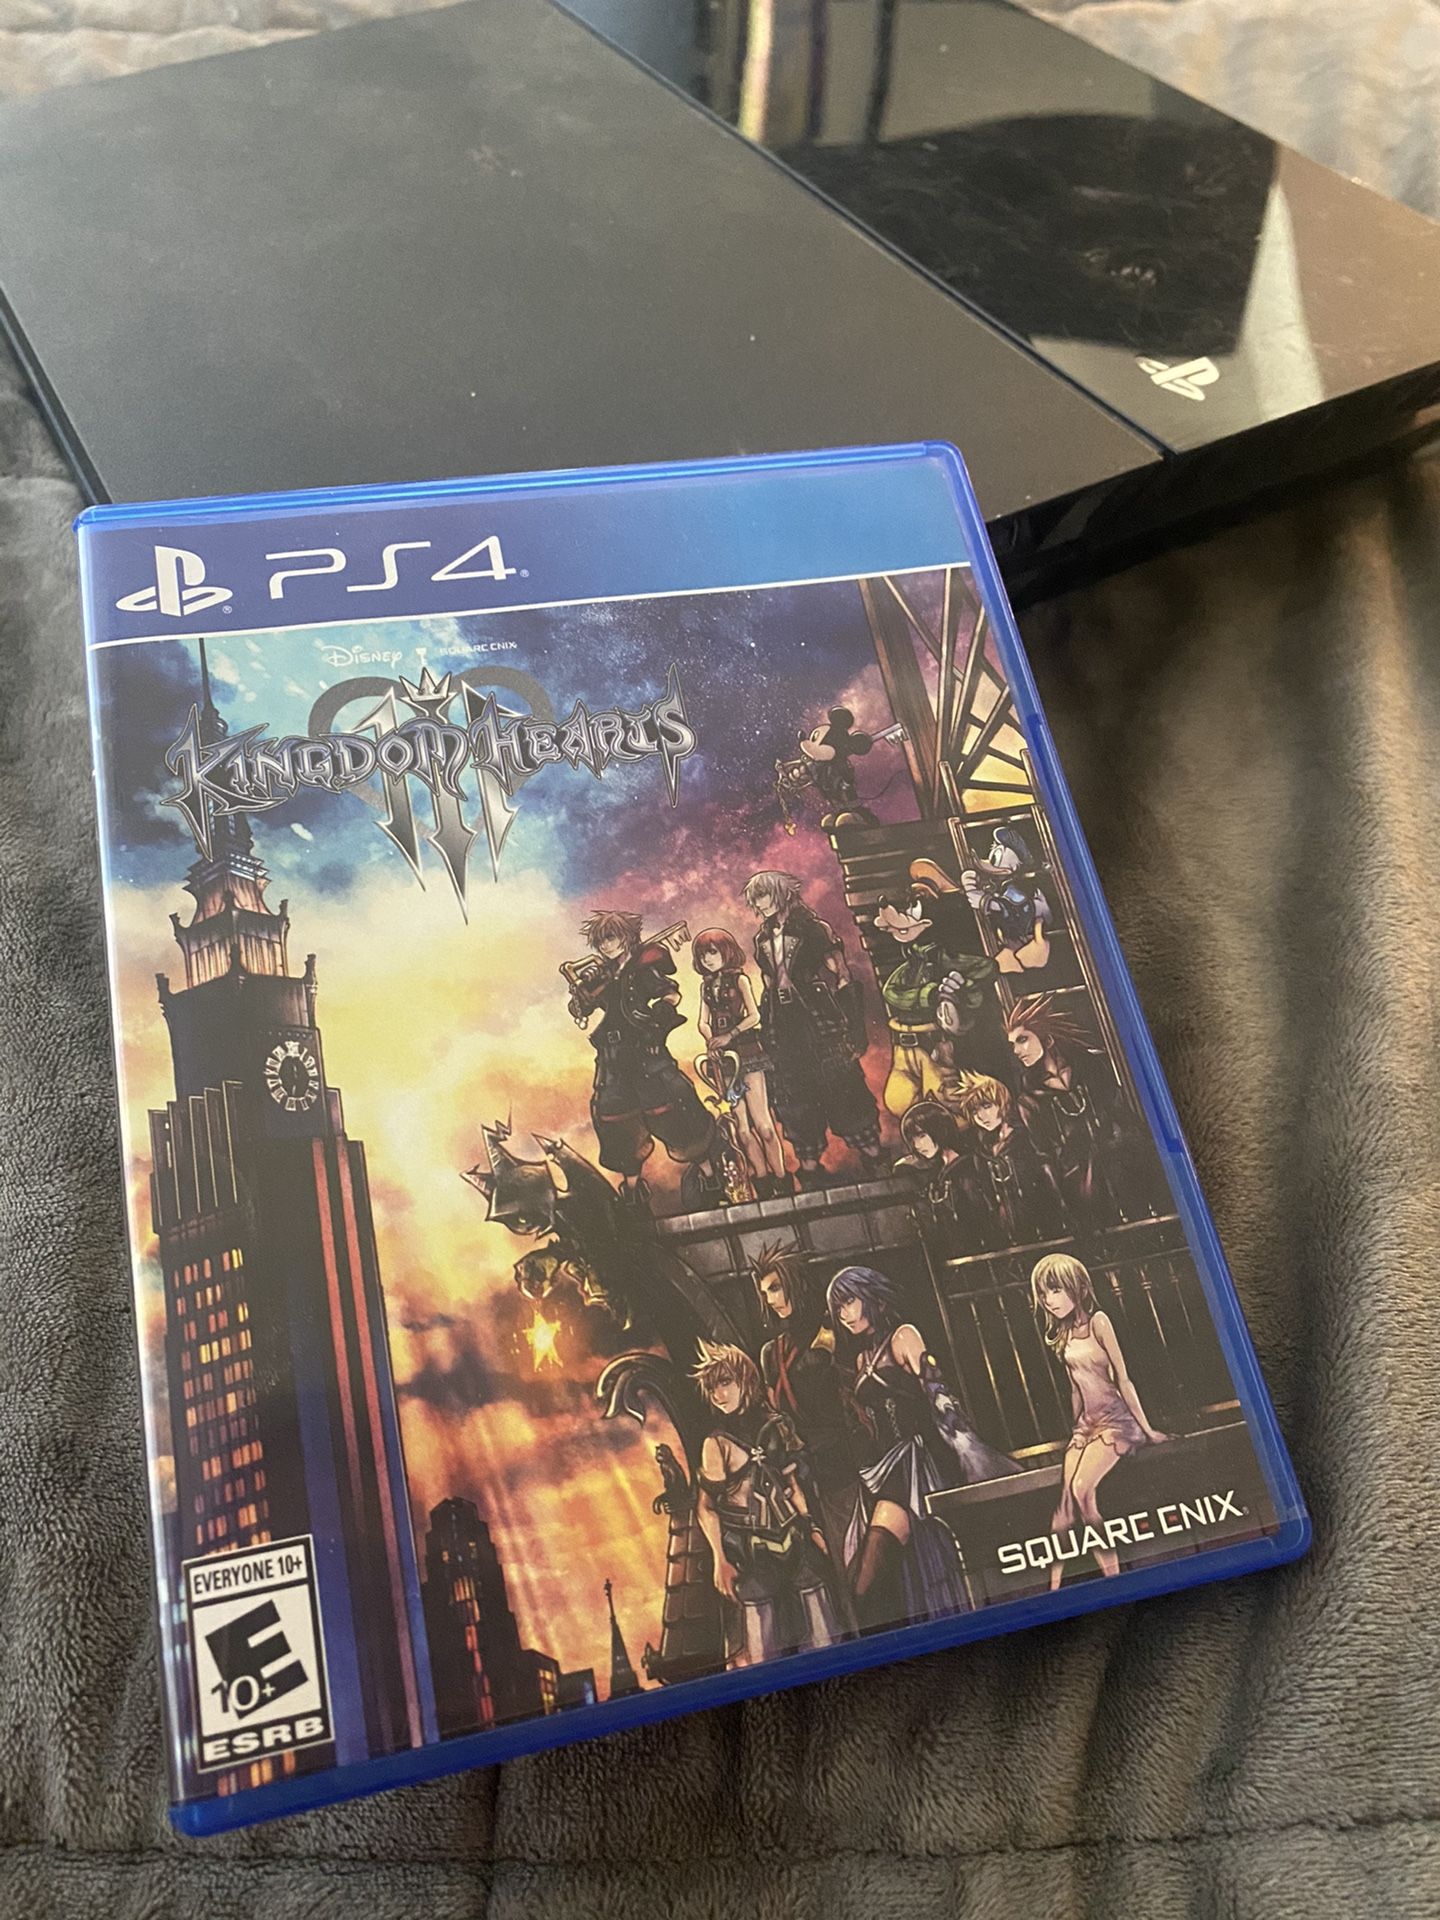 PS4 Kingdom Hearts 3 